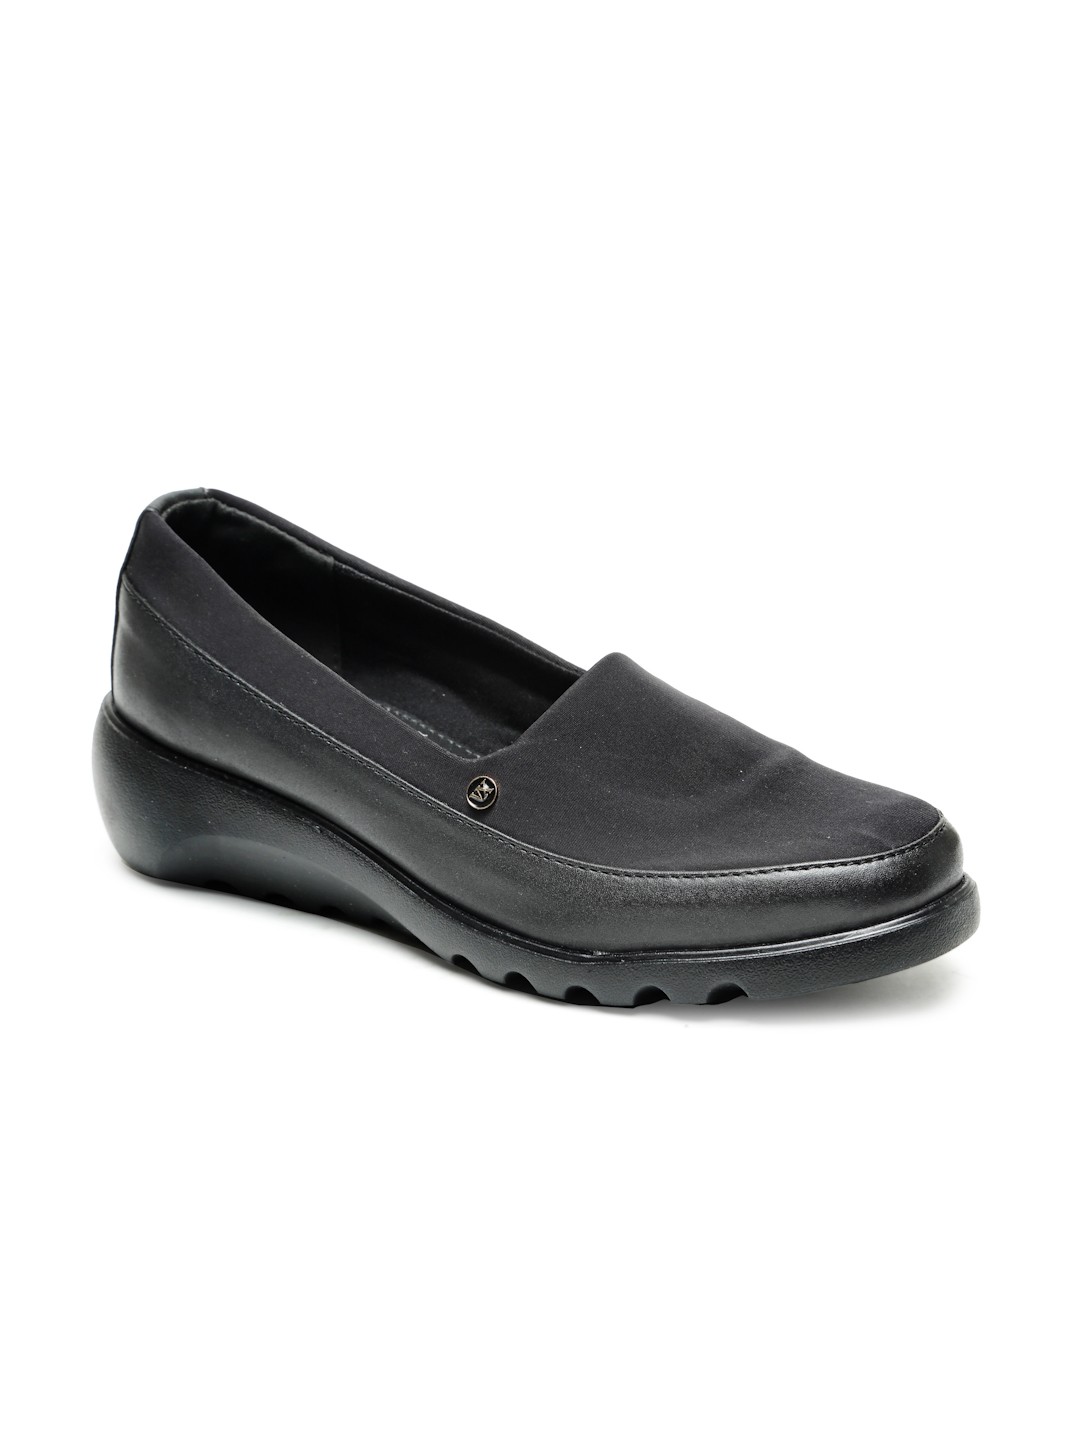 Buy Von Wellx Germany Comfort Women's Black Casual Shoes Elsa Online in Dehradun